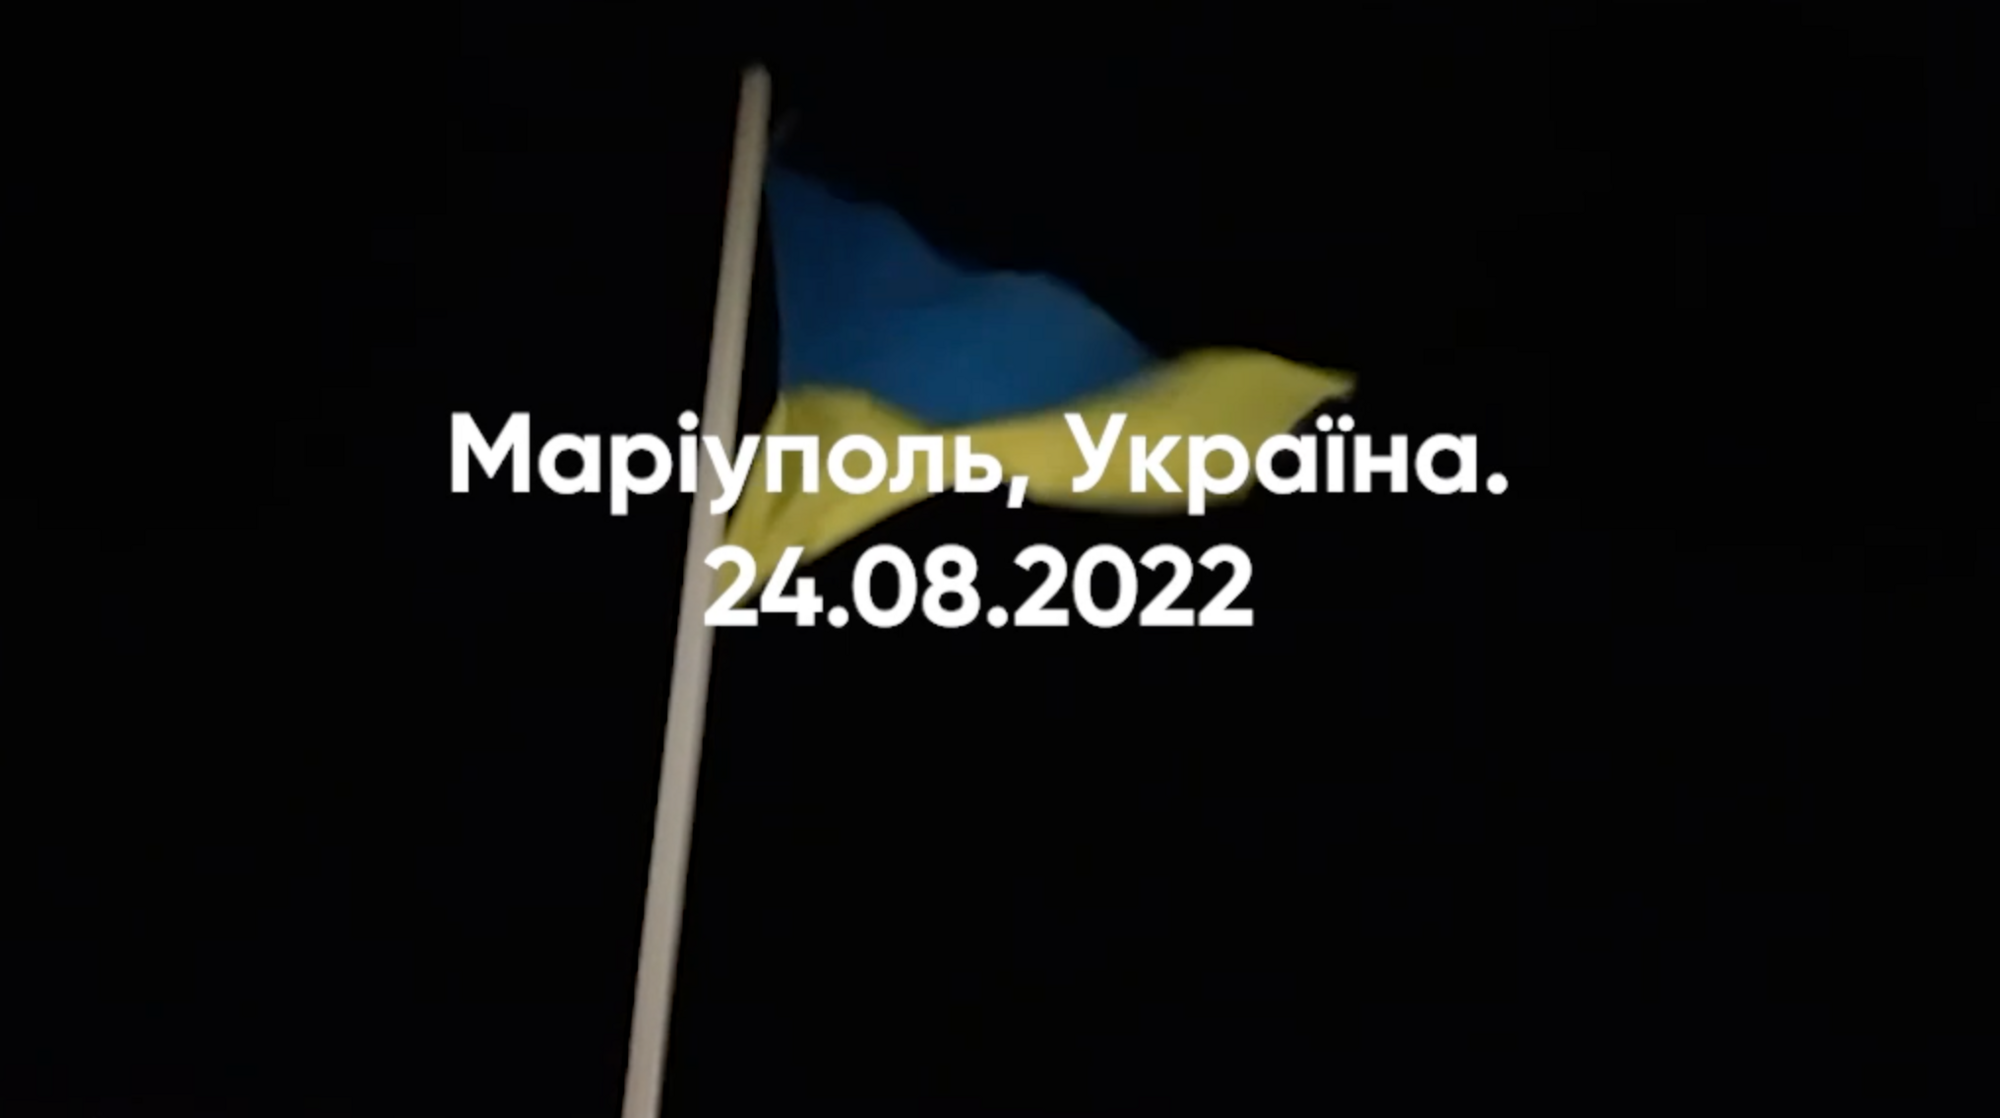 Над Маріуполем підняли український прапор.